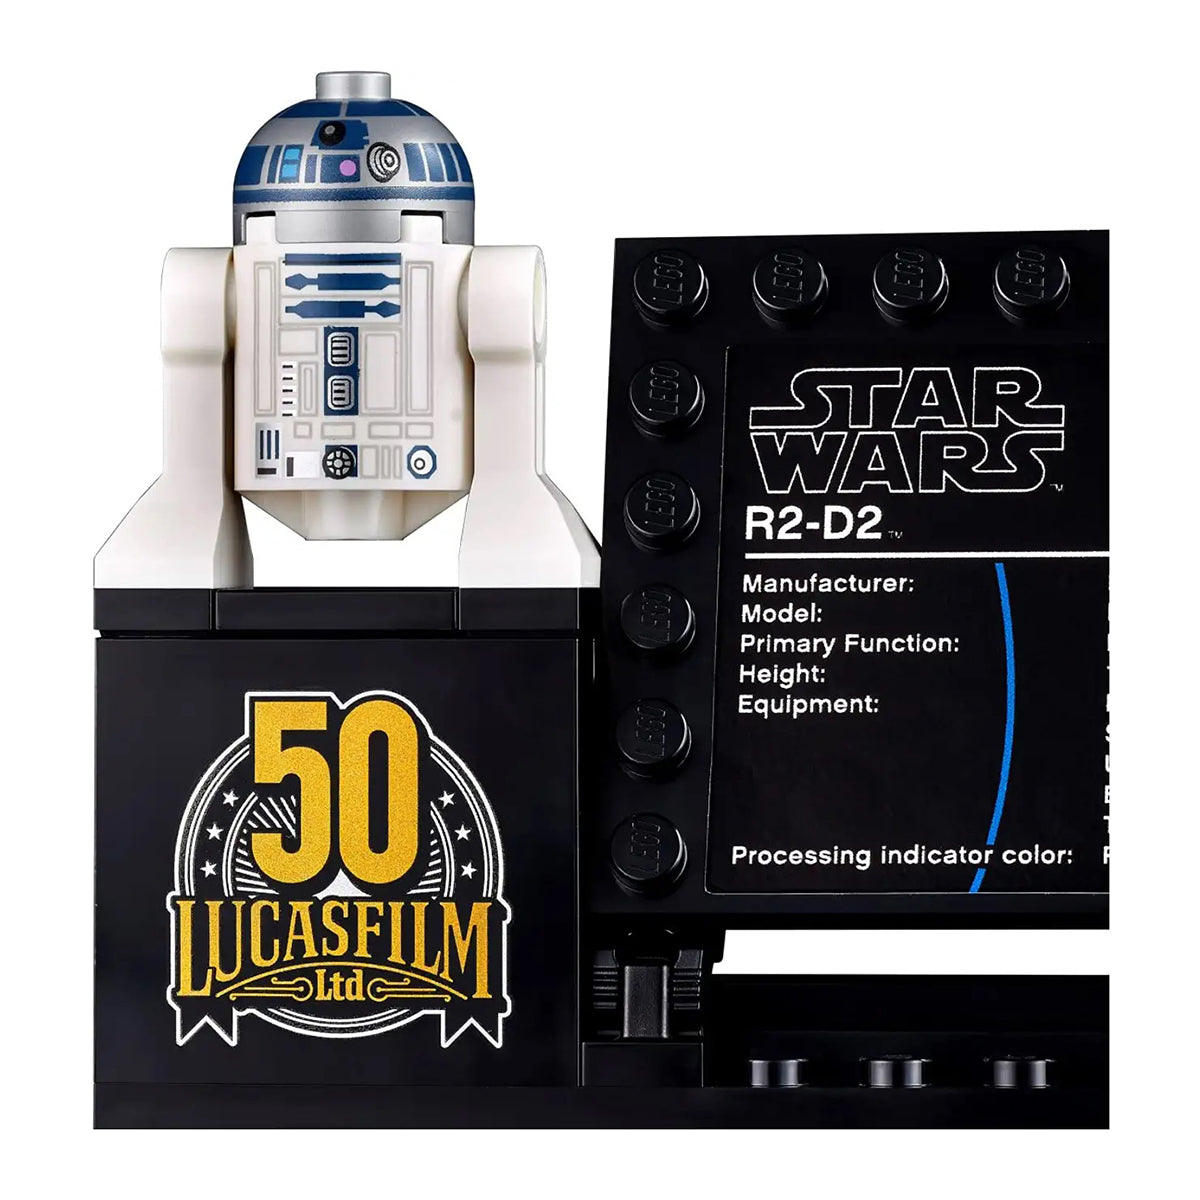 LEGO Star Wars - R2-D2 75308